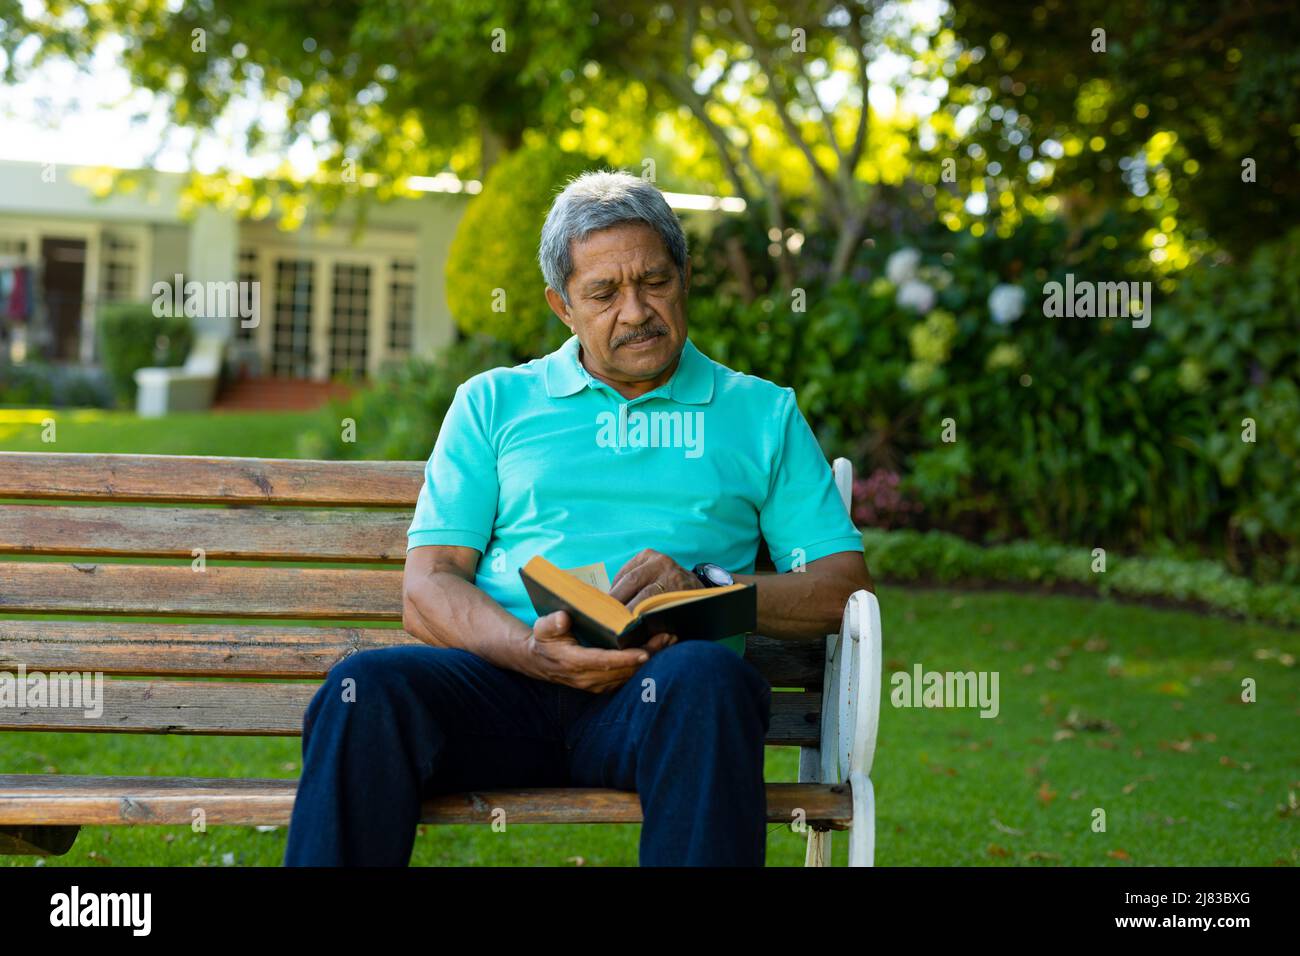 Libro de lectura de hombre mayor de edad biracial enfocado mientras está sentado en un banco contra árboles y plantas en el parque Foto de stock